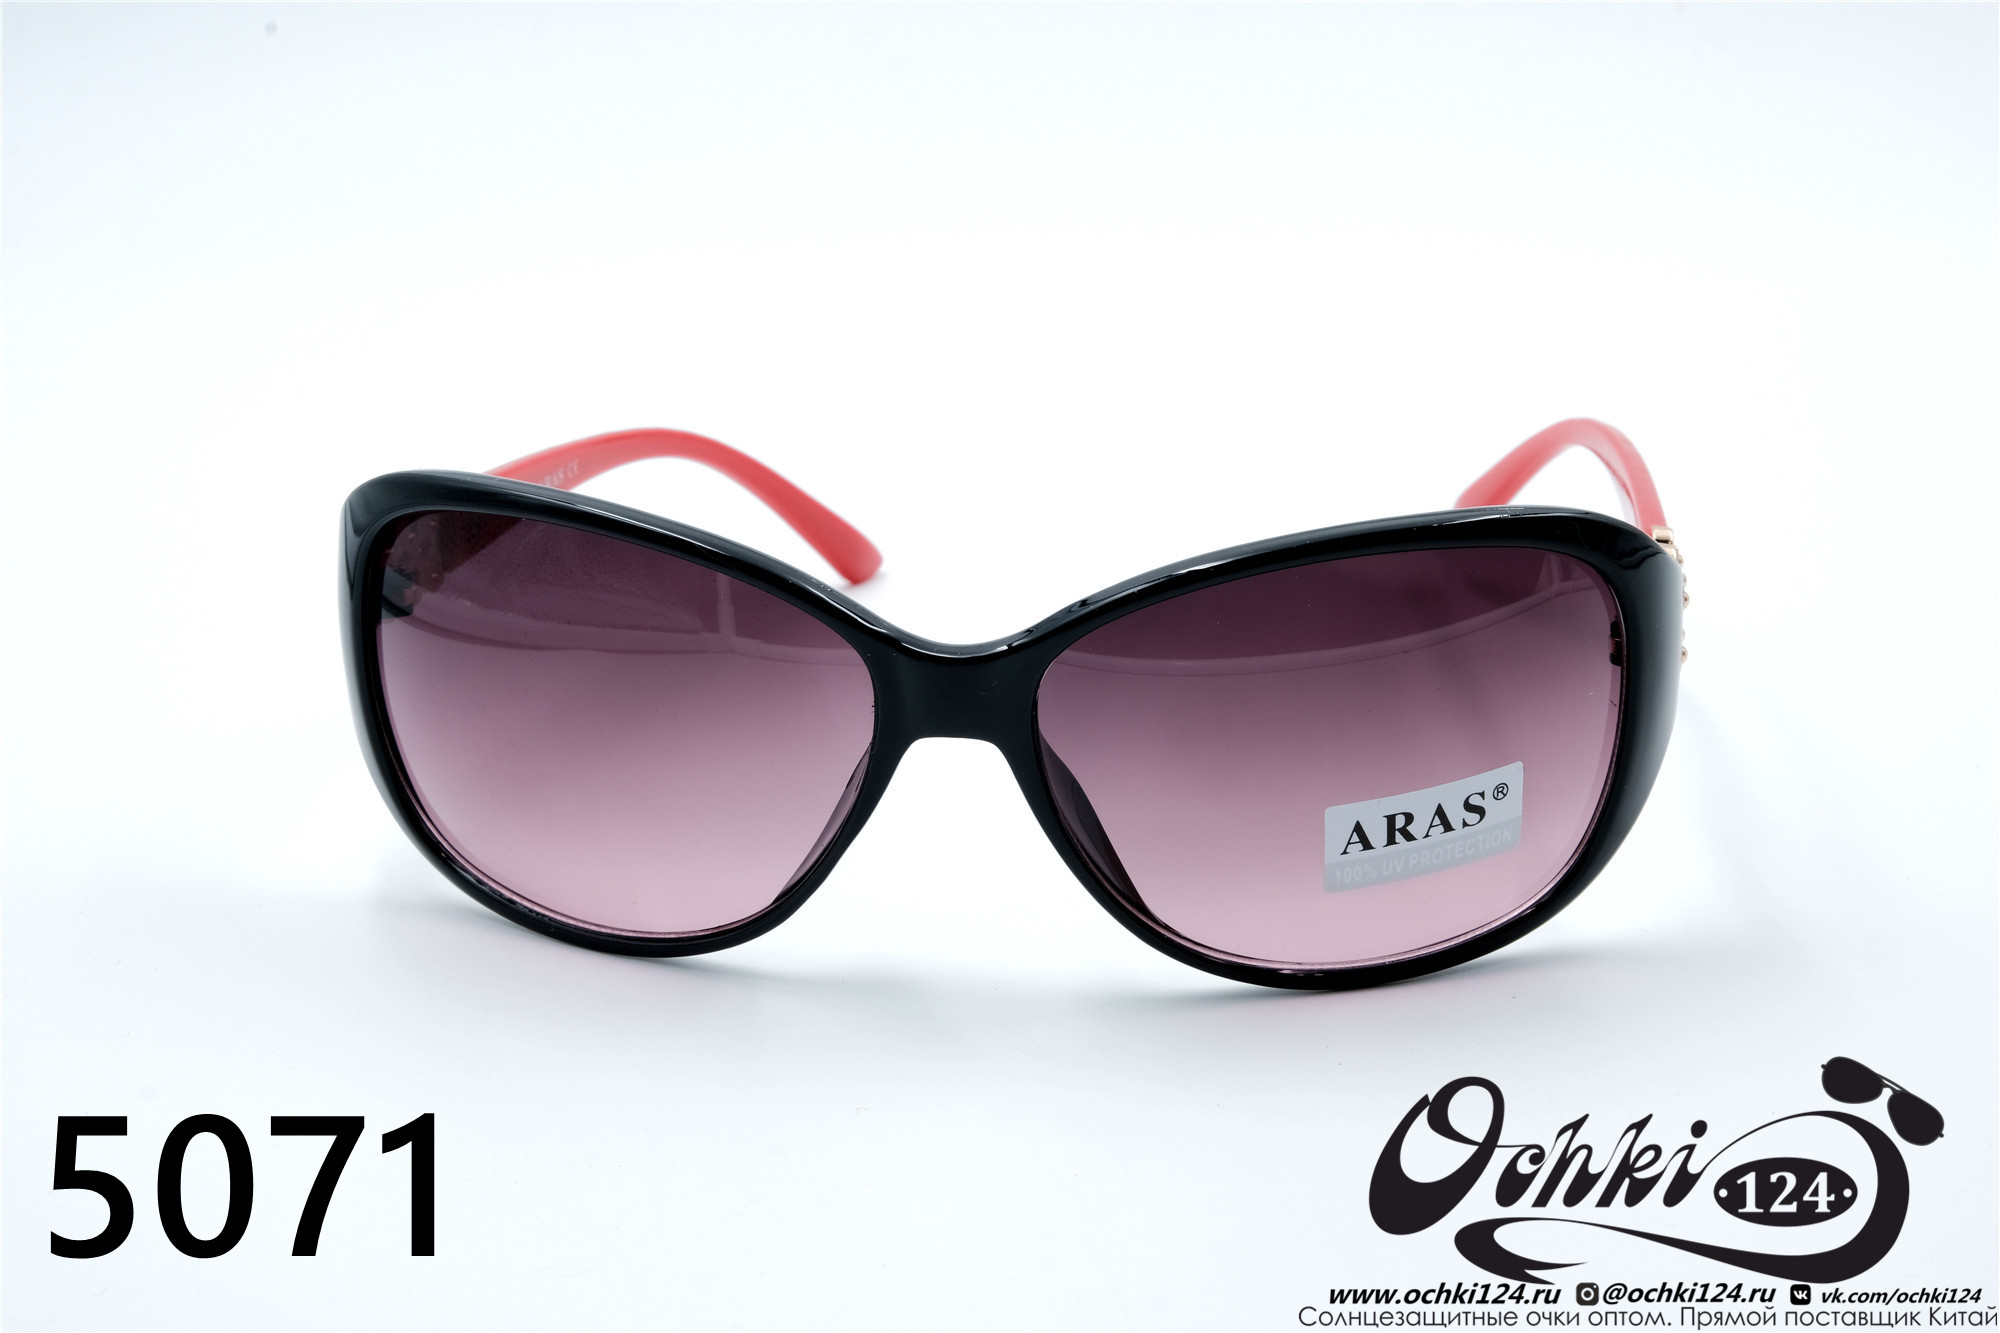  Солнцезащитные очки картинка 2022 Женские Лисички Aras 5071-3 